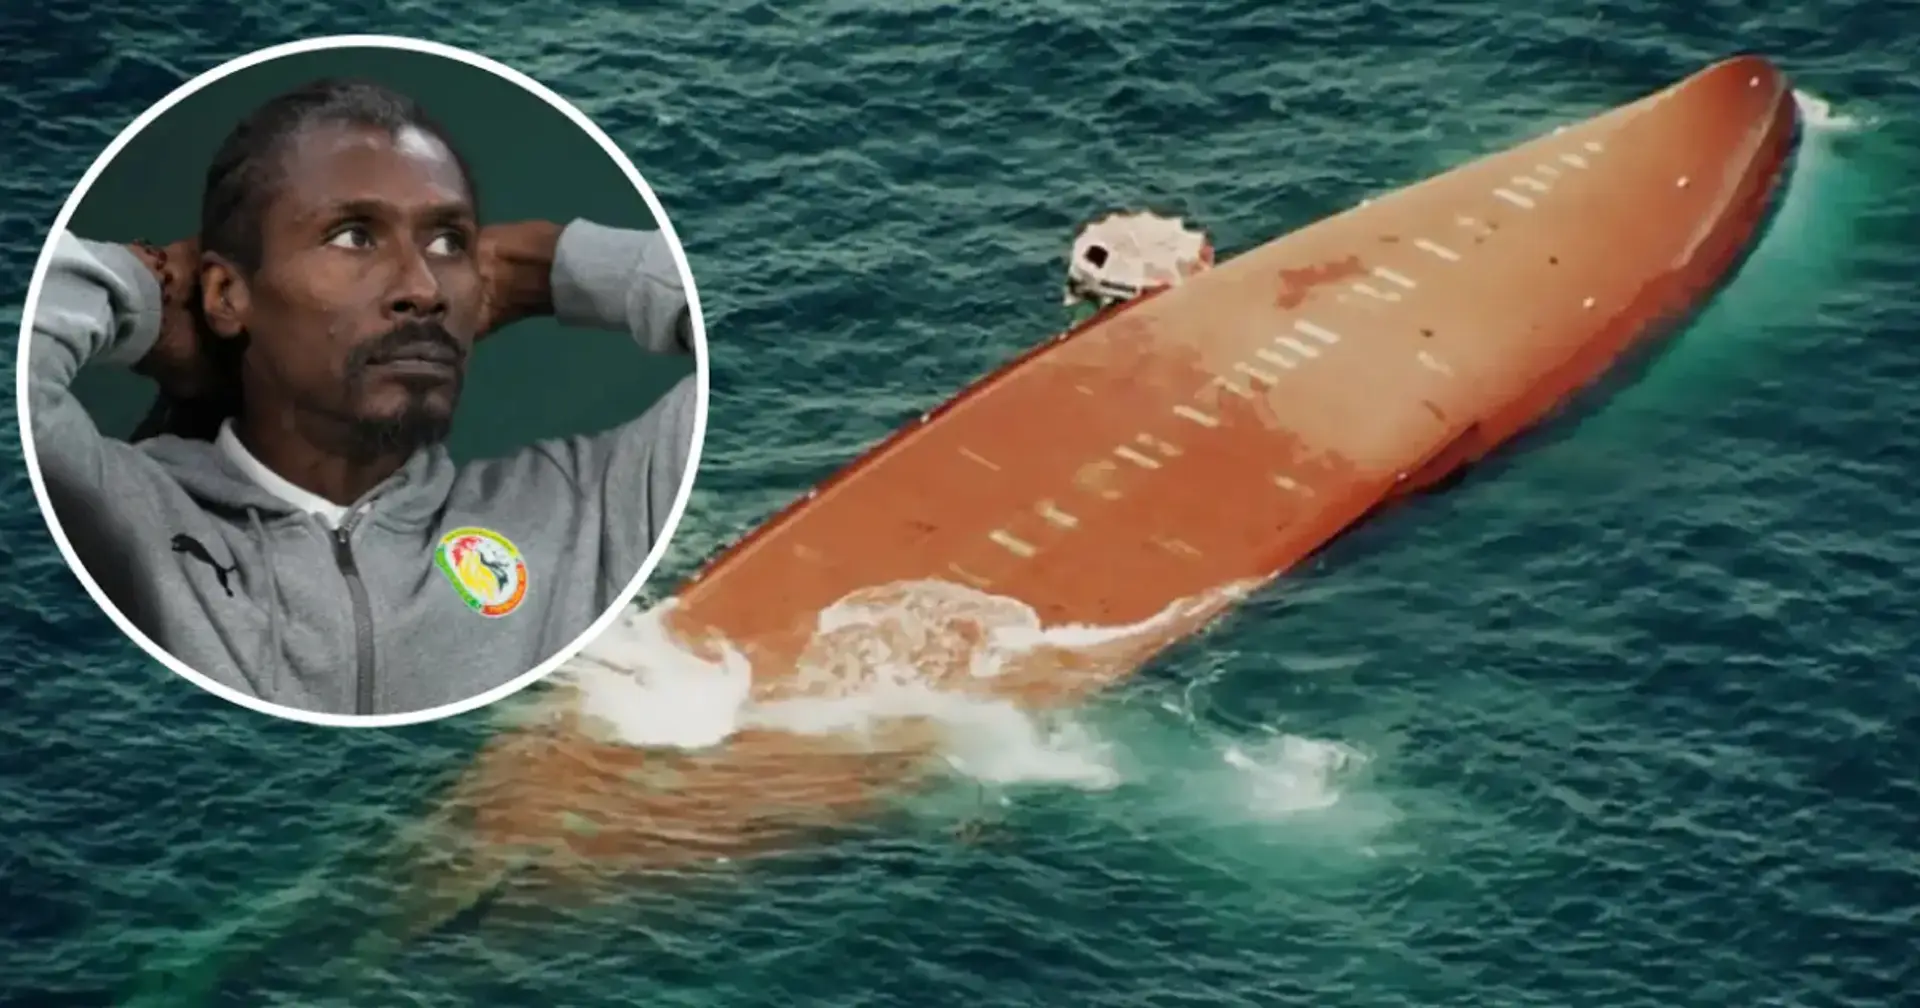 Senegal-Trainer verlor 11 Familienangehörige bei einer schrecklichen Schiffskatastrophe: Dennoch nahm er an einem EPL-Spiel teil